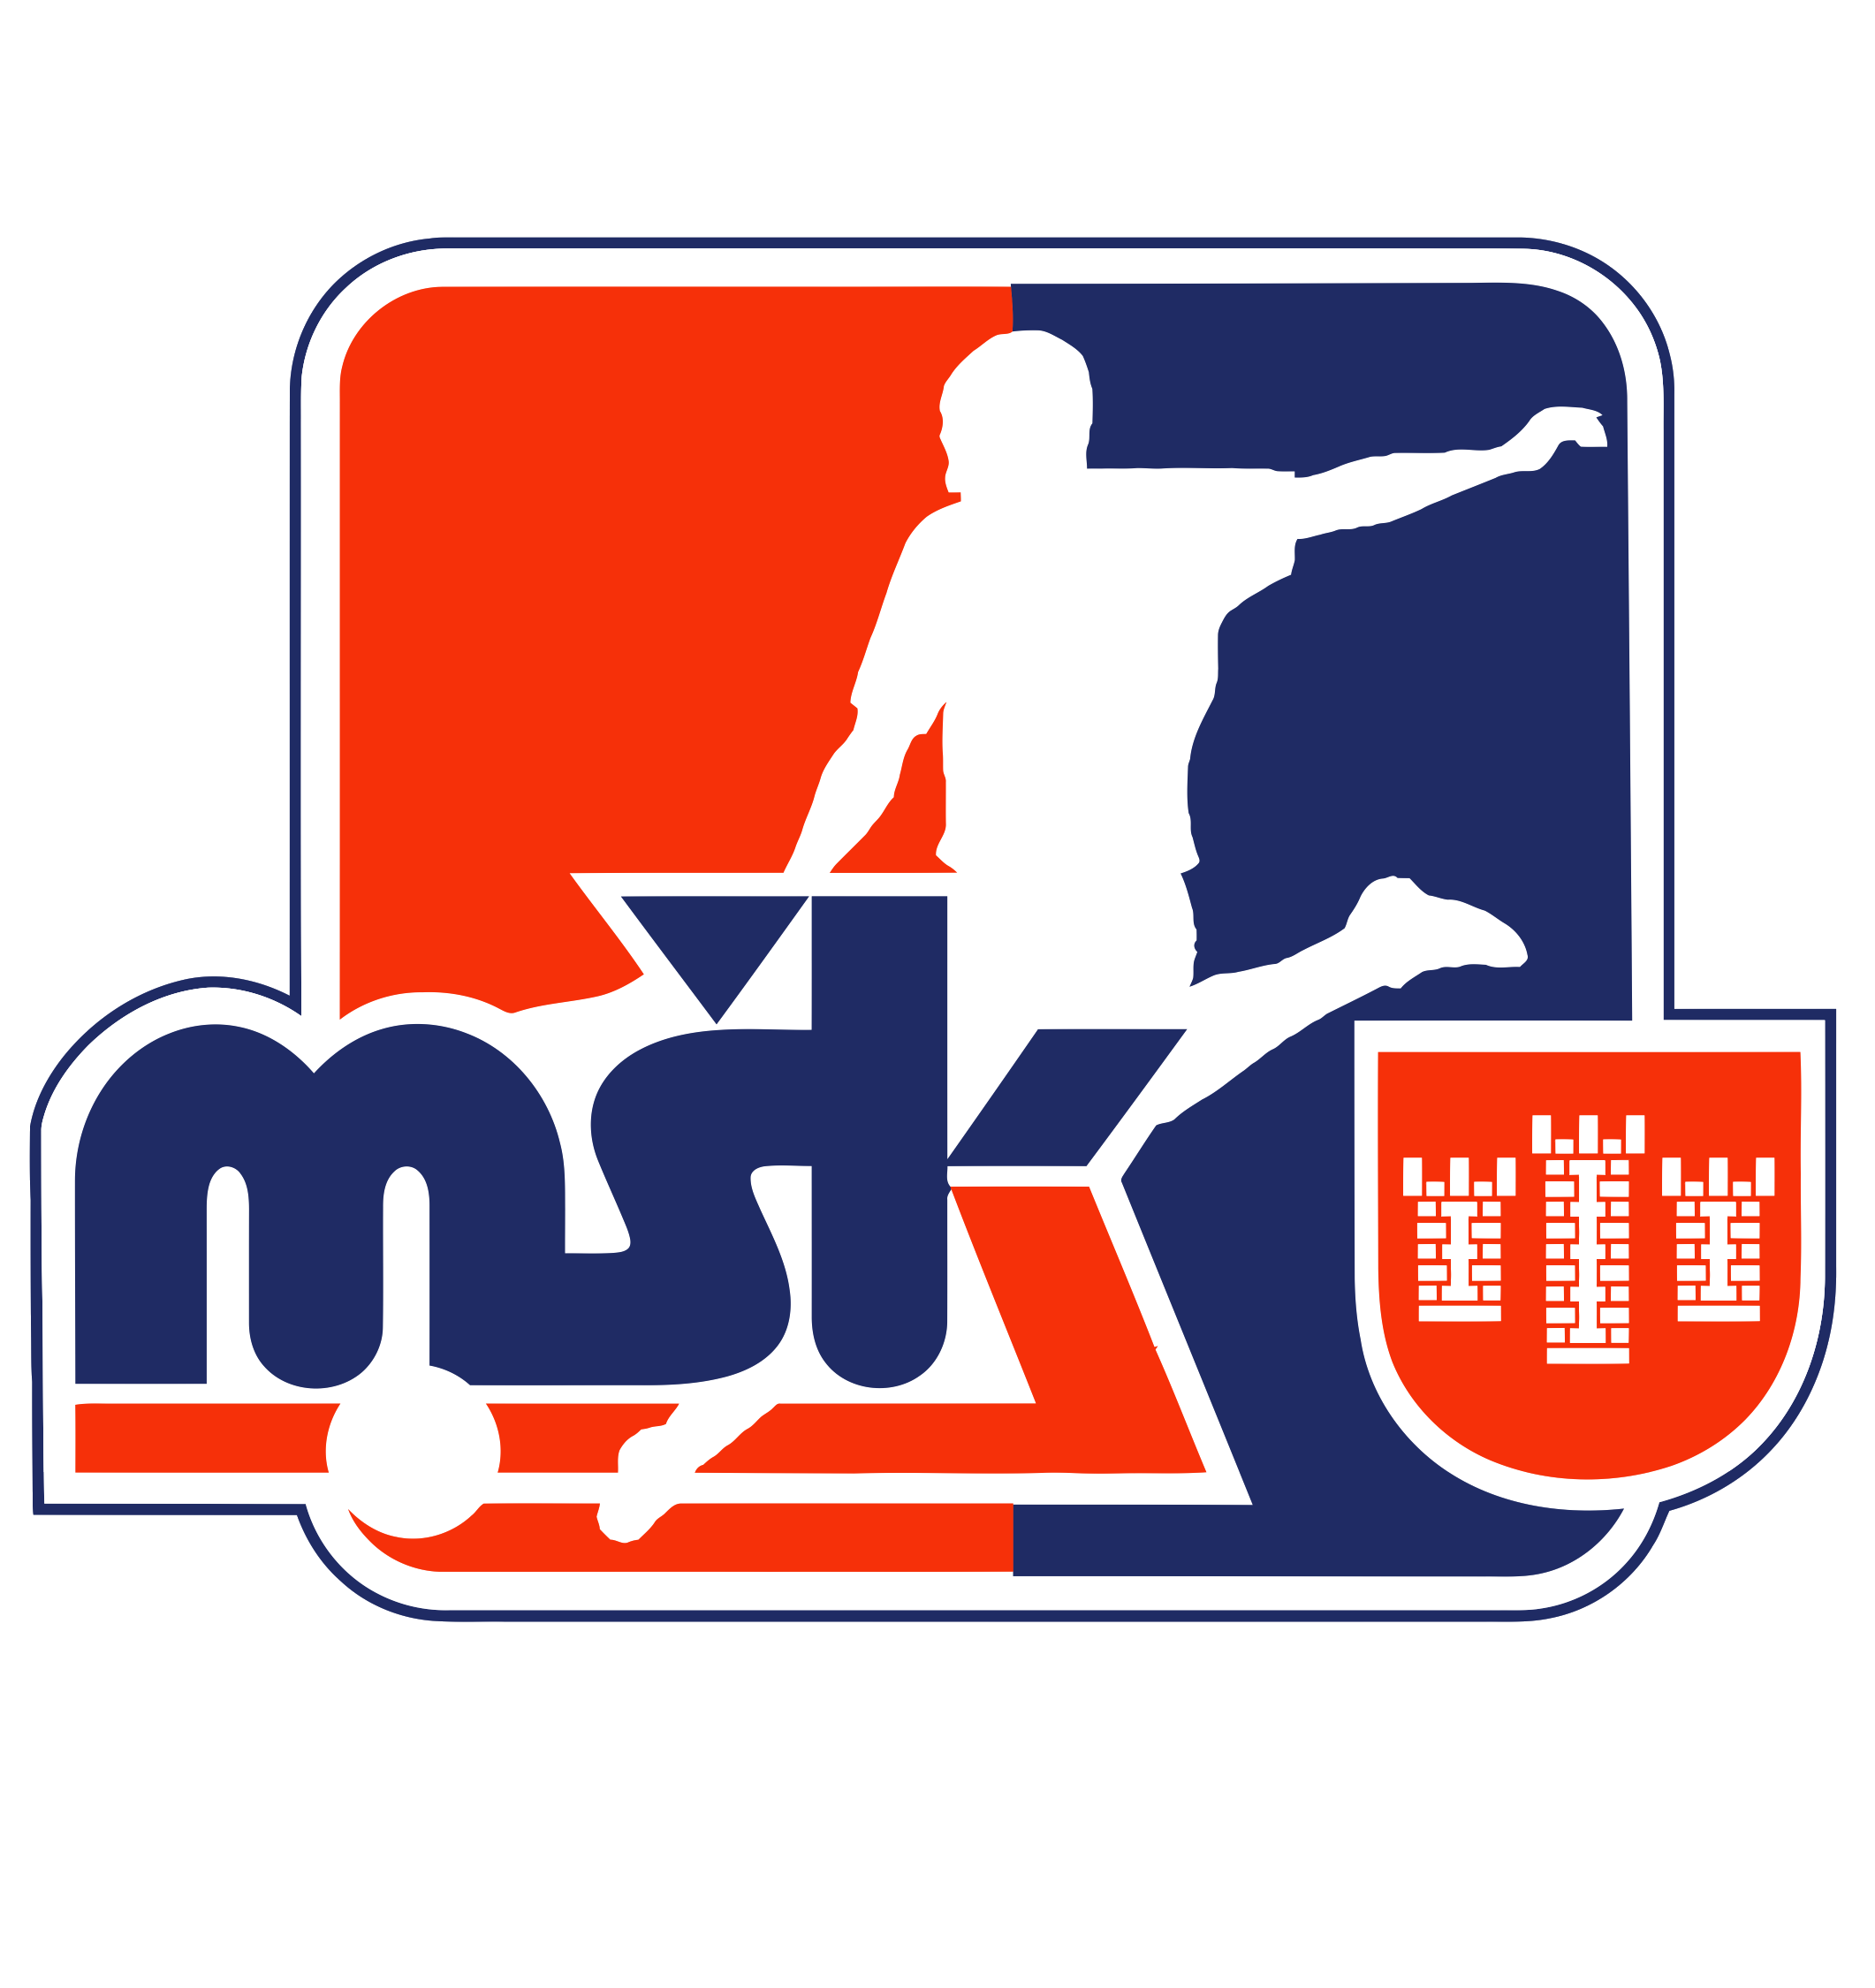 MŠK Považská Bystrica team logo